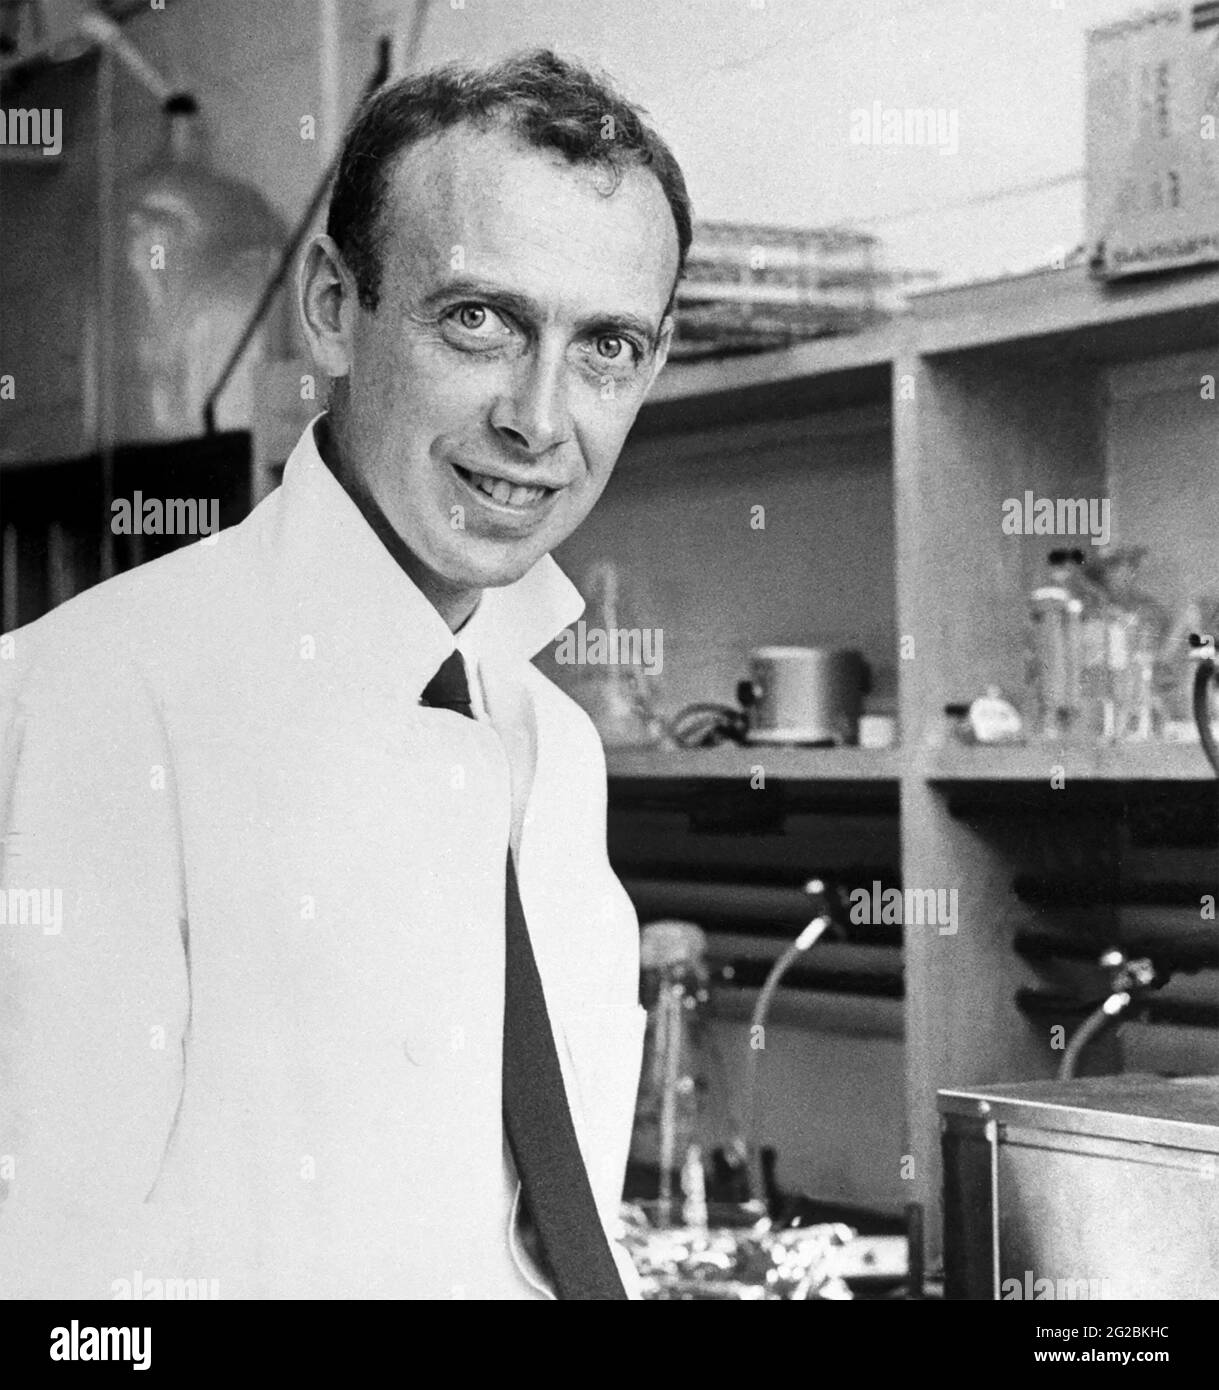 JAMES WATSON biologo molecolare americano e genetista co-autore con Francis Crick il lavoro che propone la struttura a doppia elica della molecola di DNA. Foto circa 1968. Foto Stock